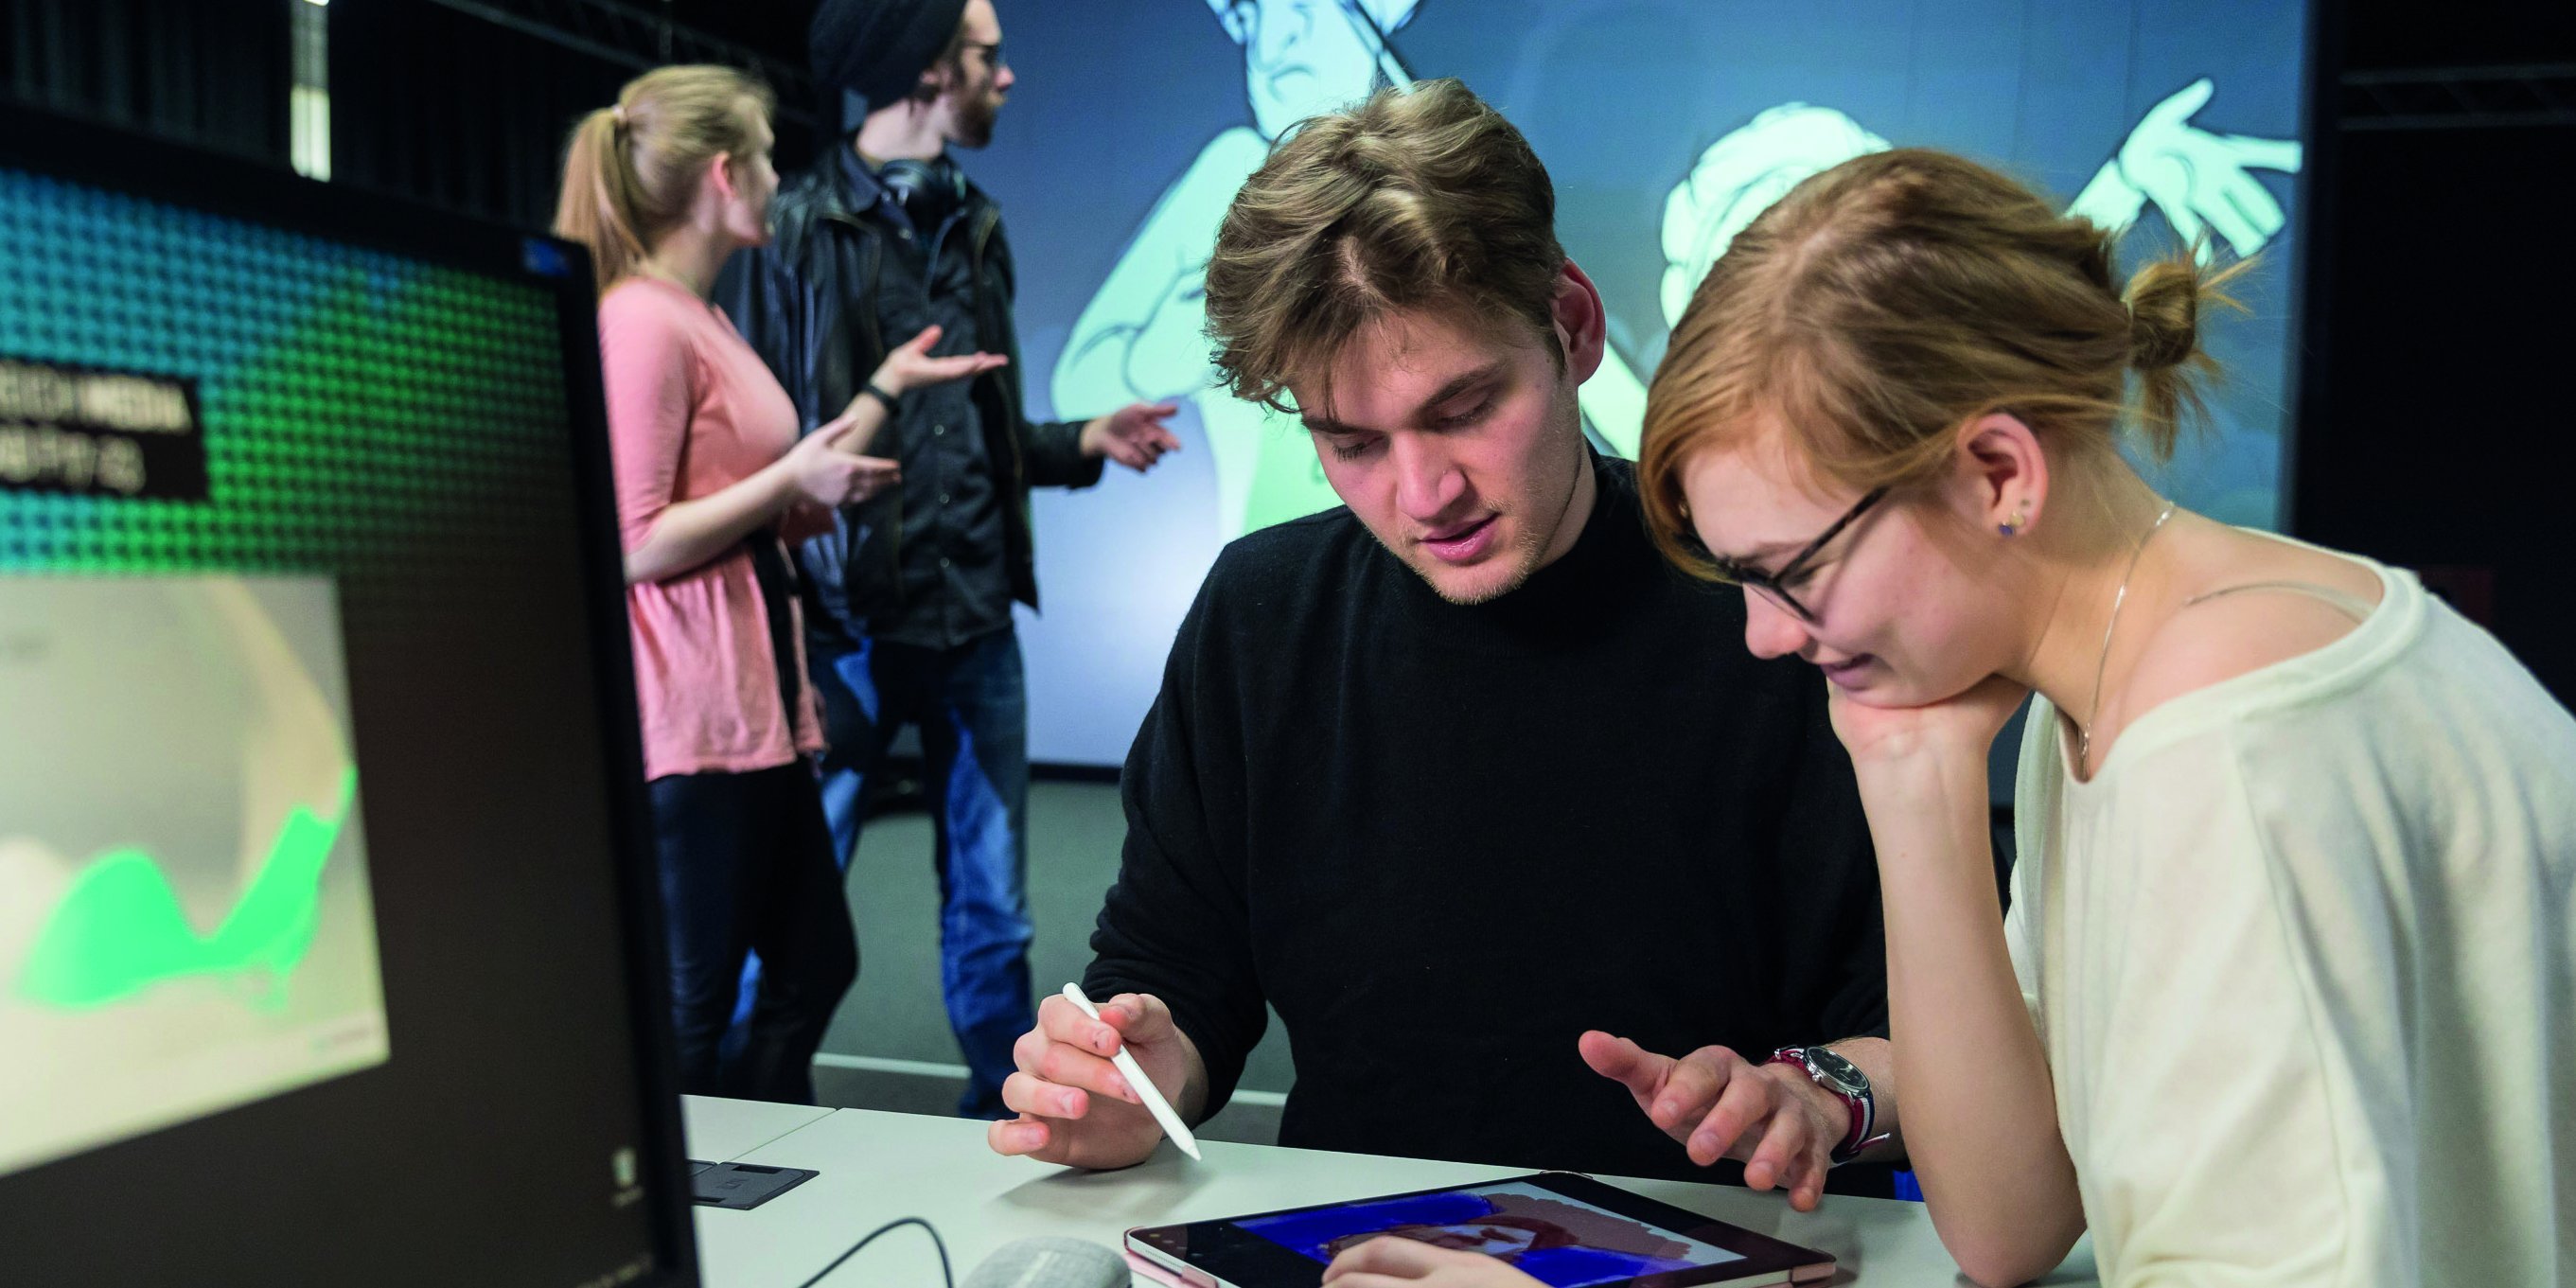 zwei Studierende sitzen an einem Tisch und blicken gemeinsam auf ein Tablet, im Hintergrund stehen zwei Studierende vor einem BIldschirm